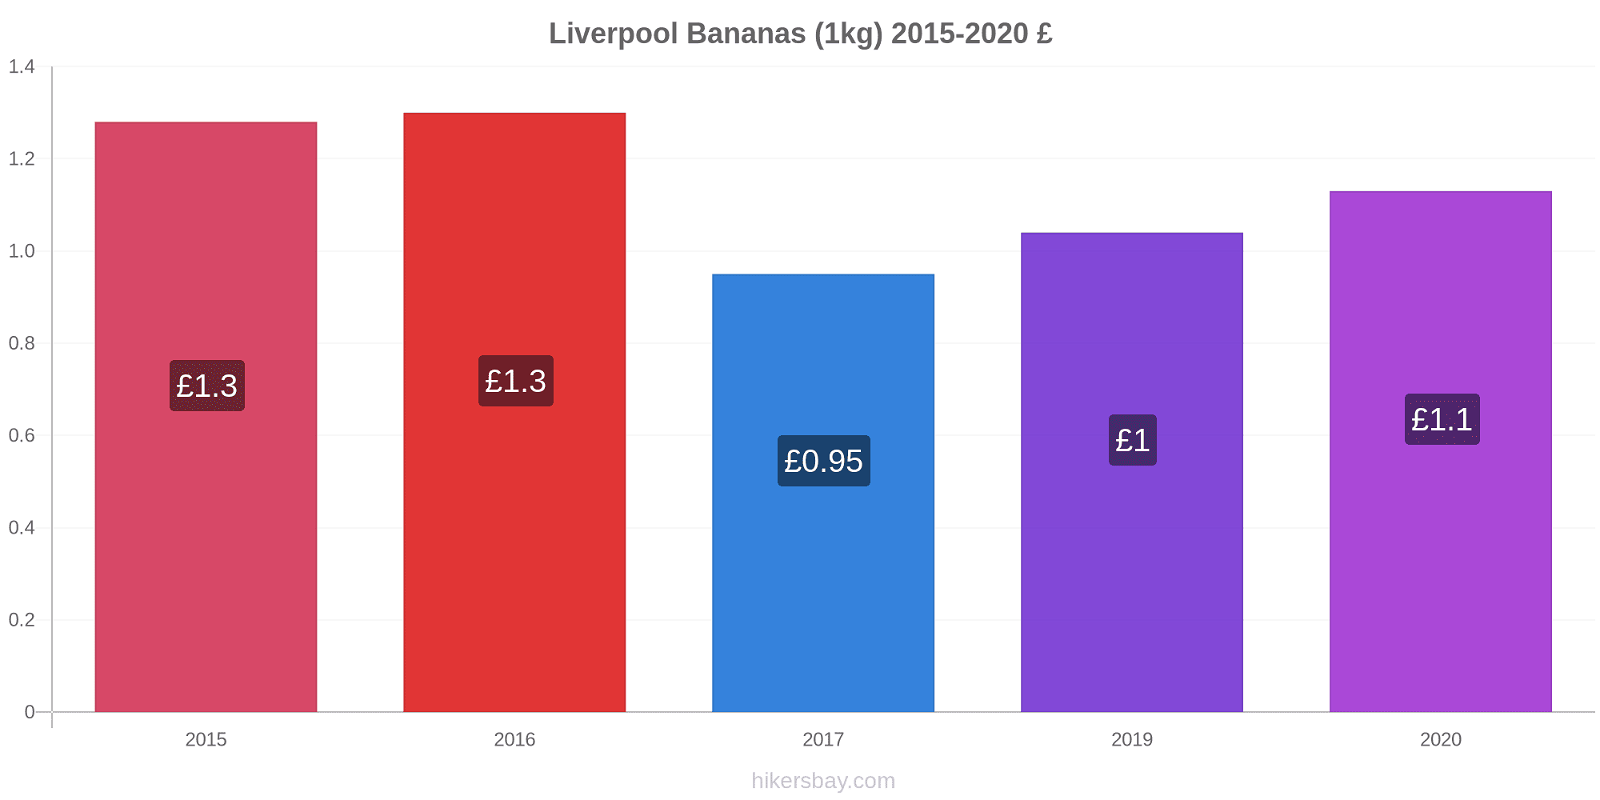 Liverpool price changes Bananas (1kg) hikersbay.com